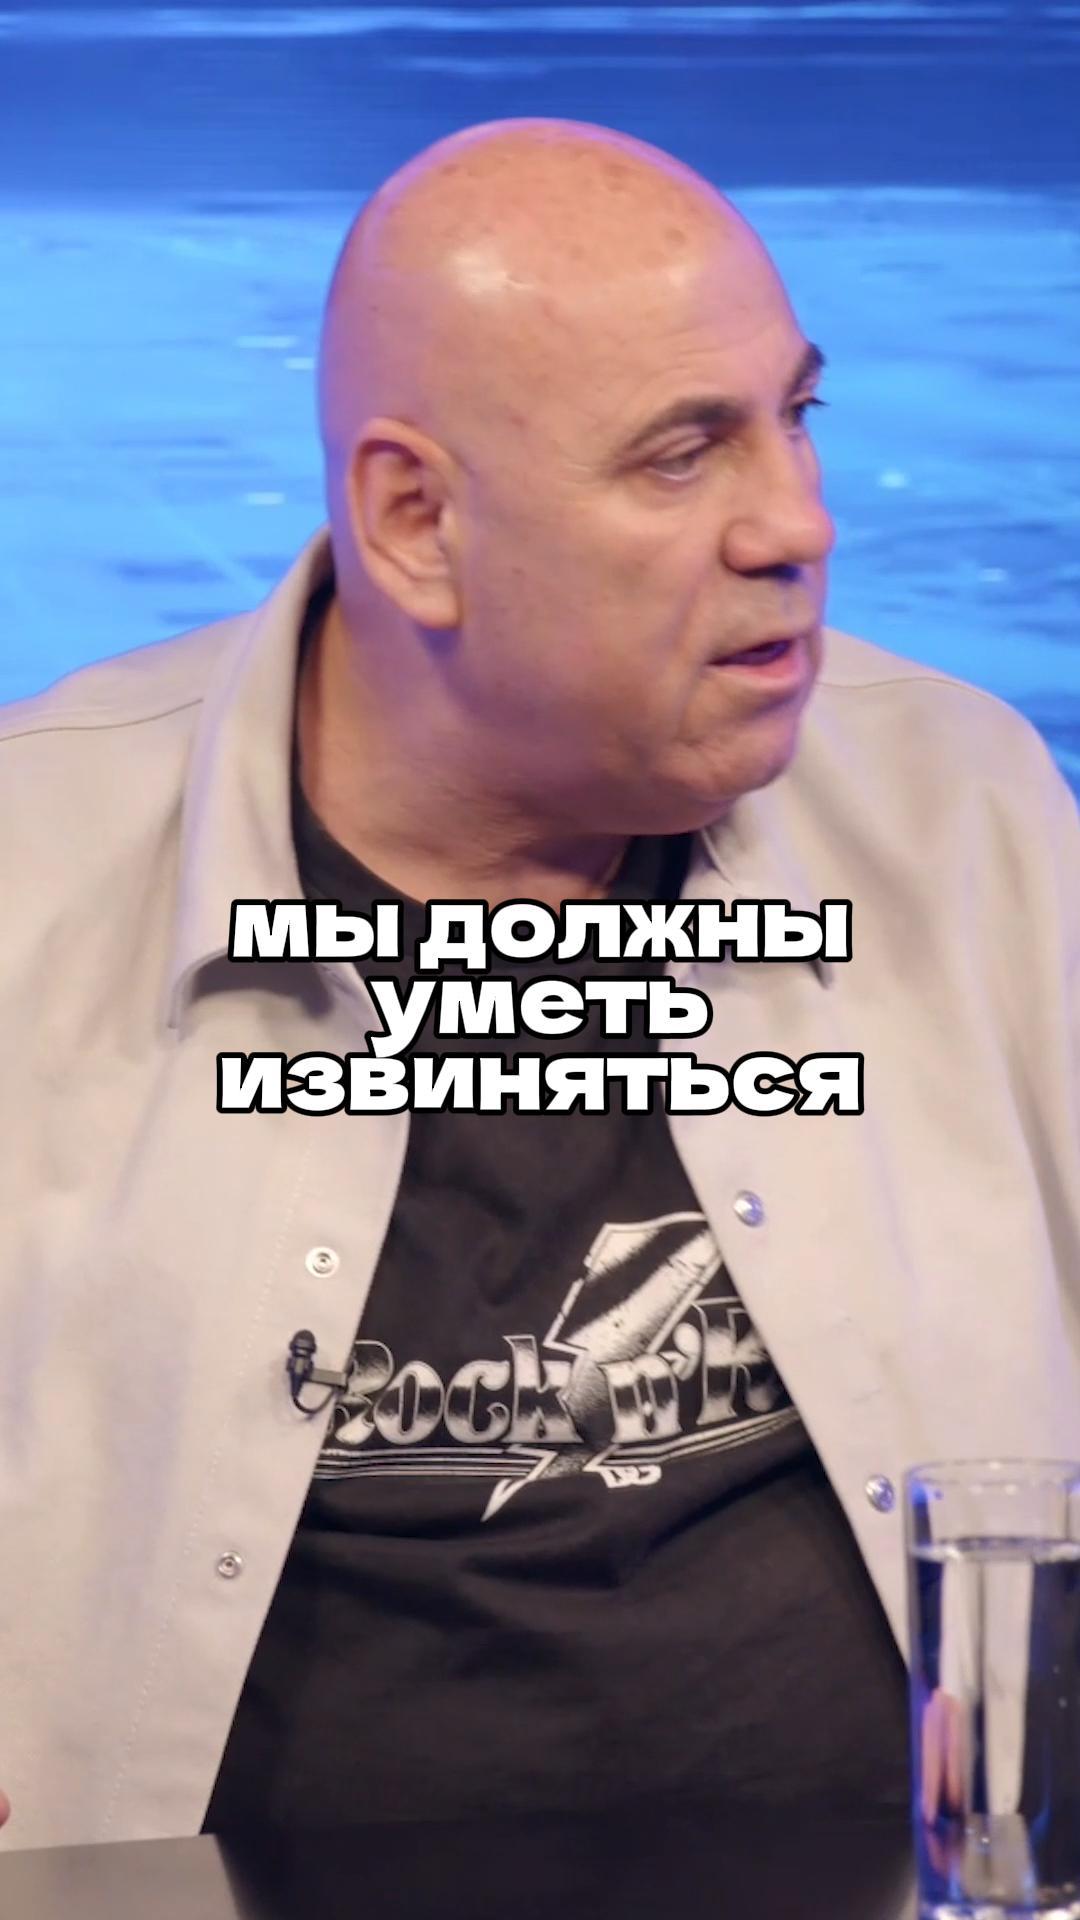 Иосиф Пригожин в интервью Ломовка Live / Об извинениях #отношения #извинения #силадуха